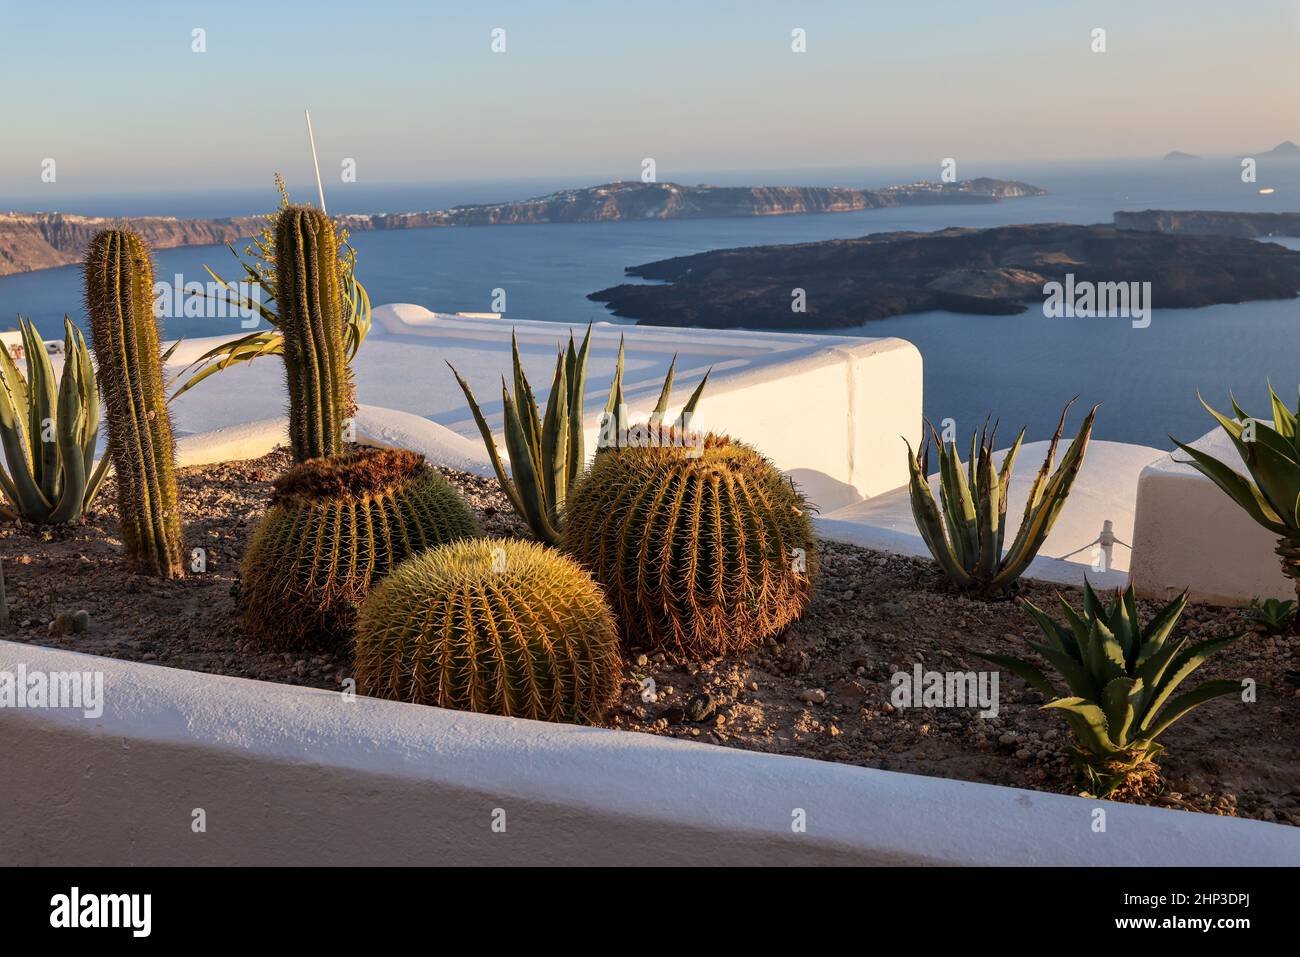 Gros plan de cactus et d'aloès qui poussent dans un lit de fleurs à Santorin.Caldera en arrière-plan. Banque D'Images